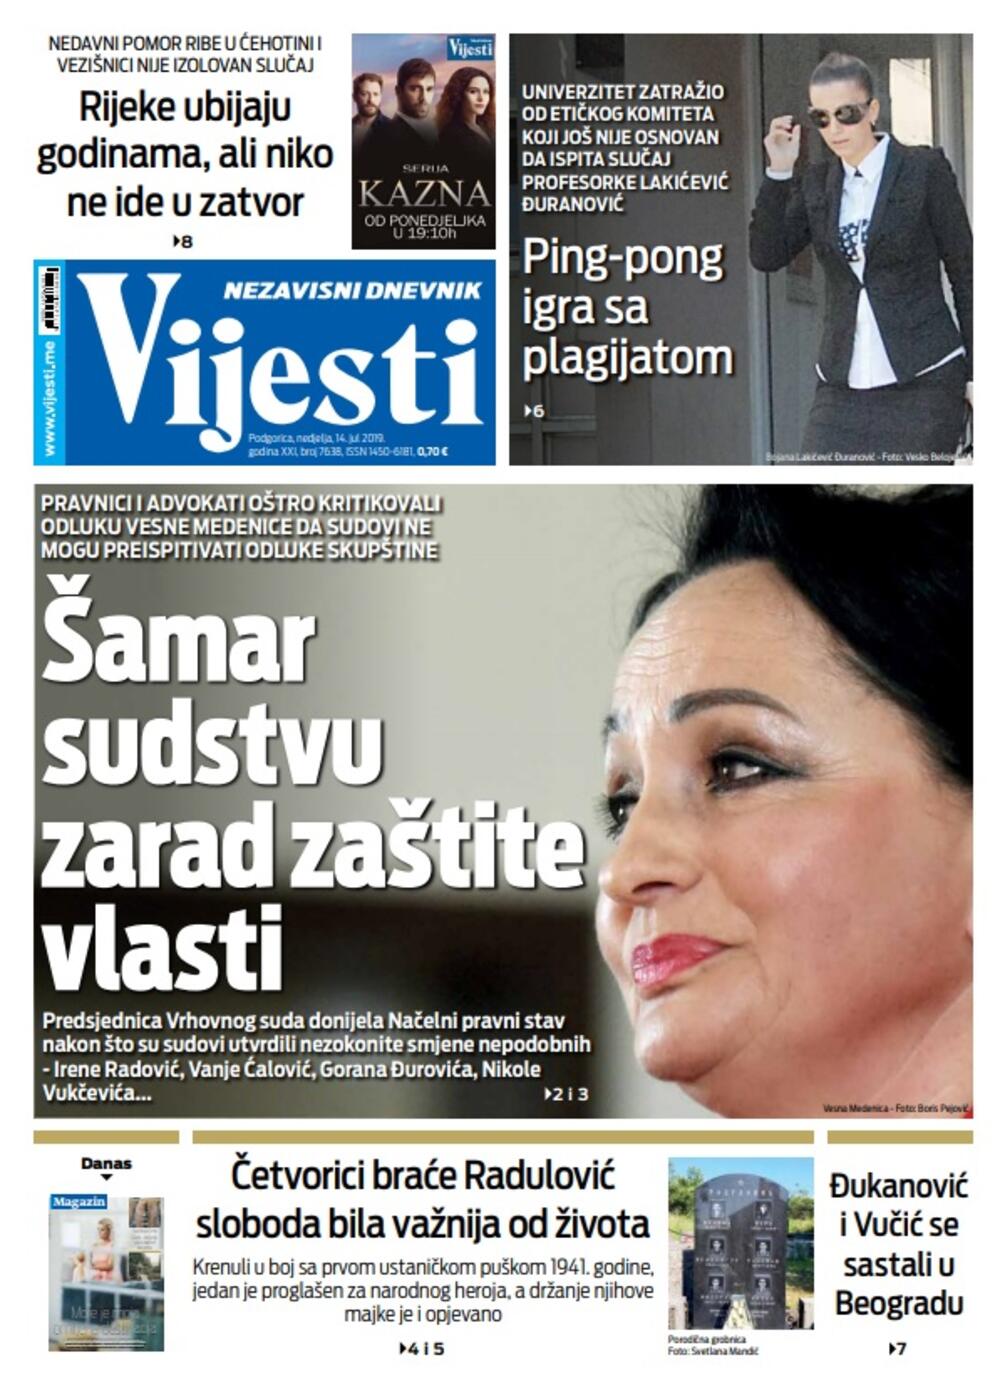 Naslovna strana "Vijesti" 14.7., Foto: Vijesti